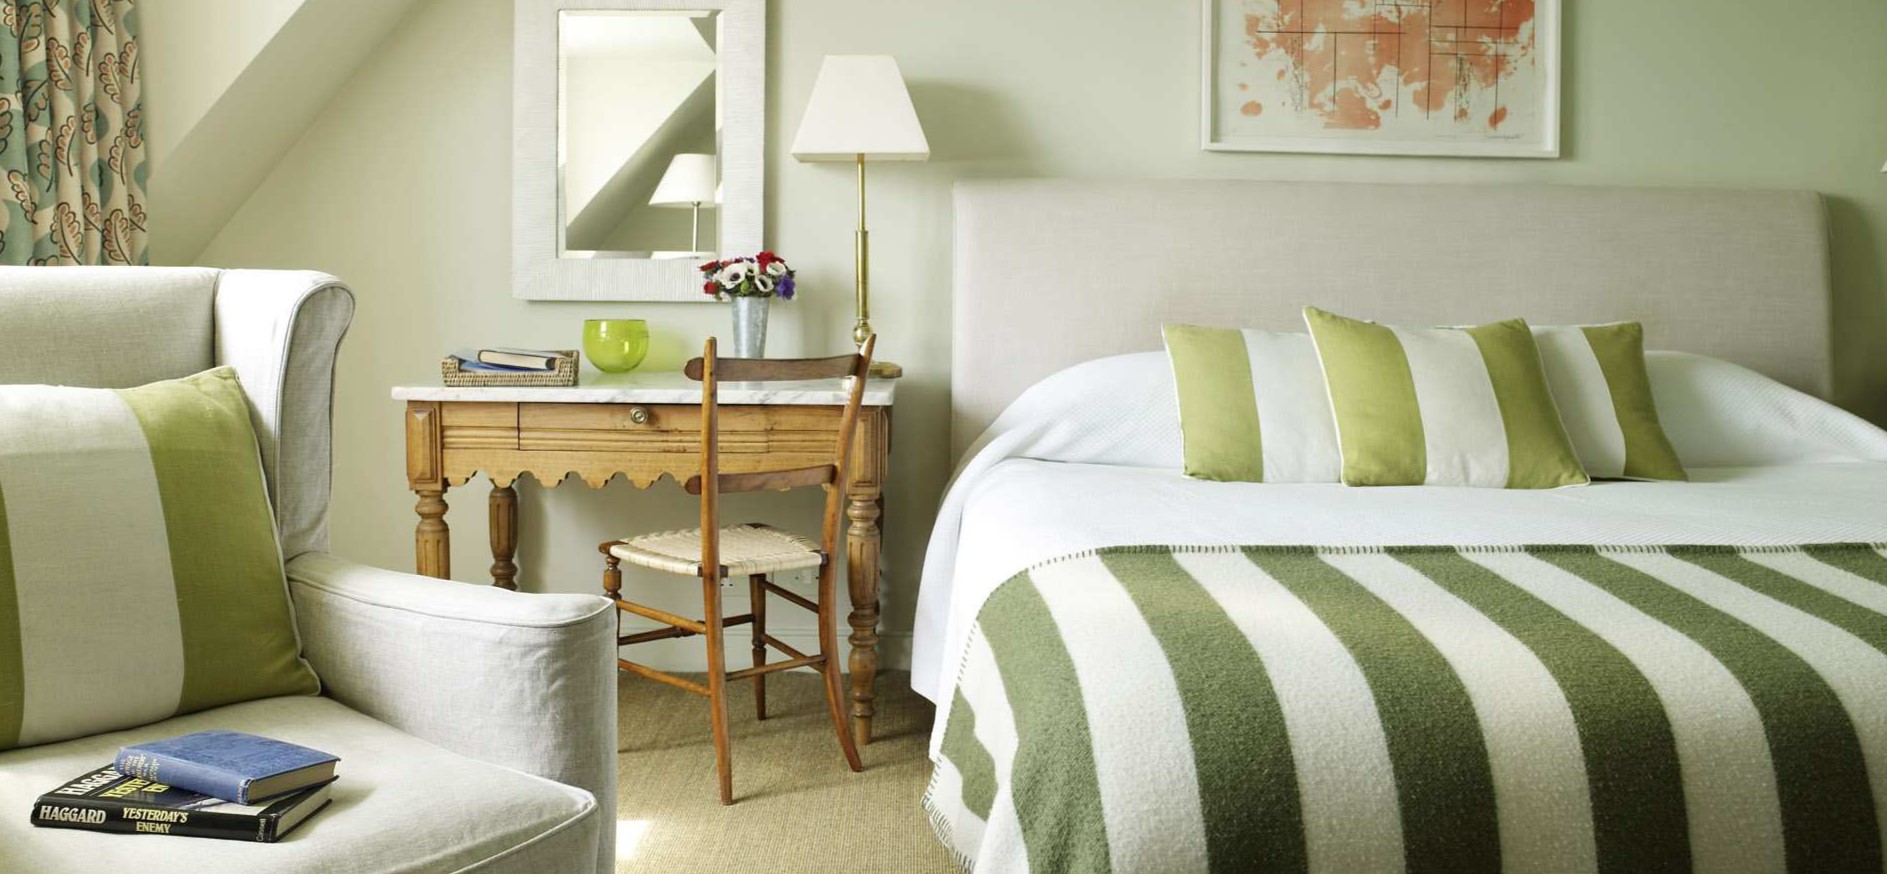 Украсить кровать можно стильным покрывалом и подушками